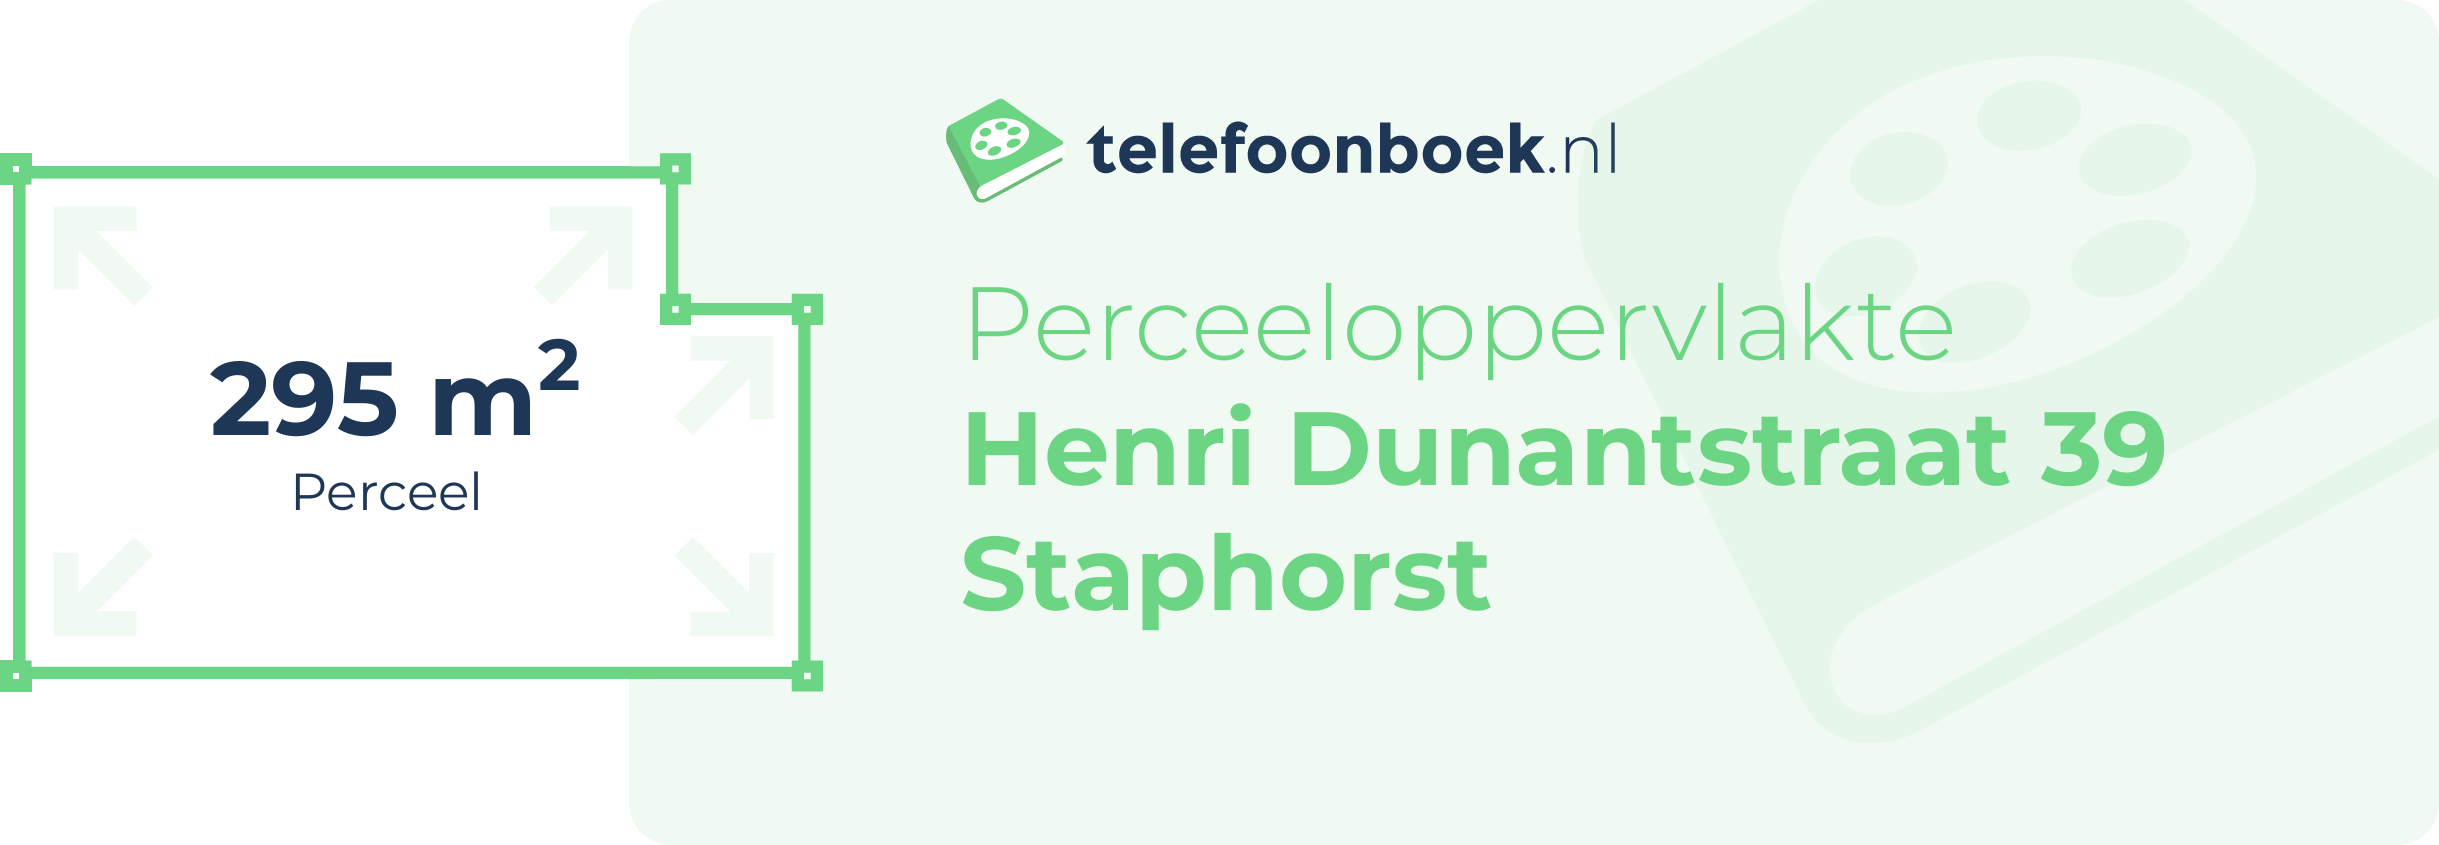 Perceeloppervlakte Henri Dunantstraat 39 Staphorst